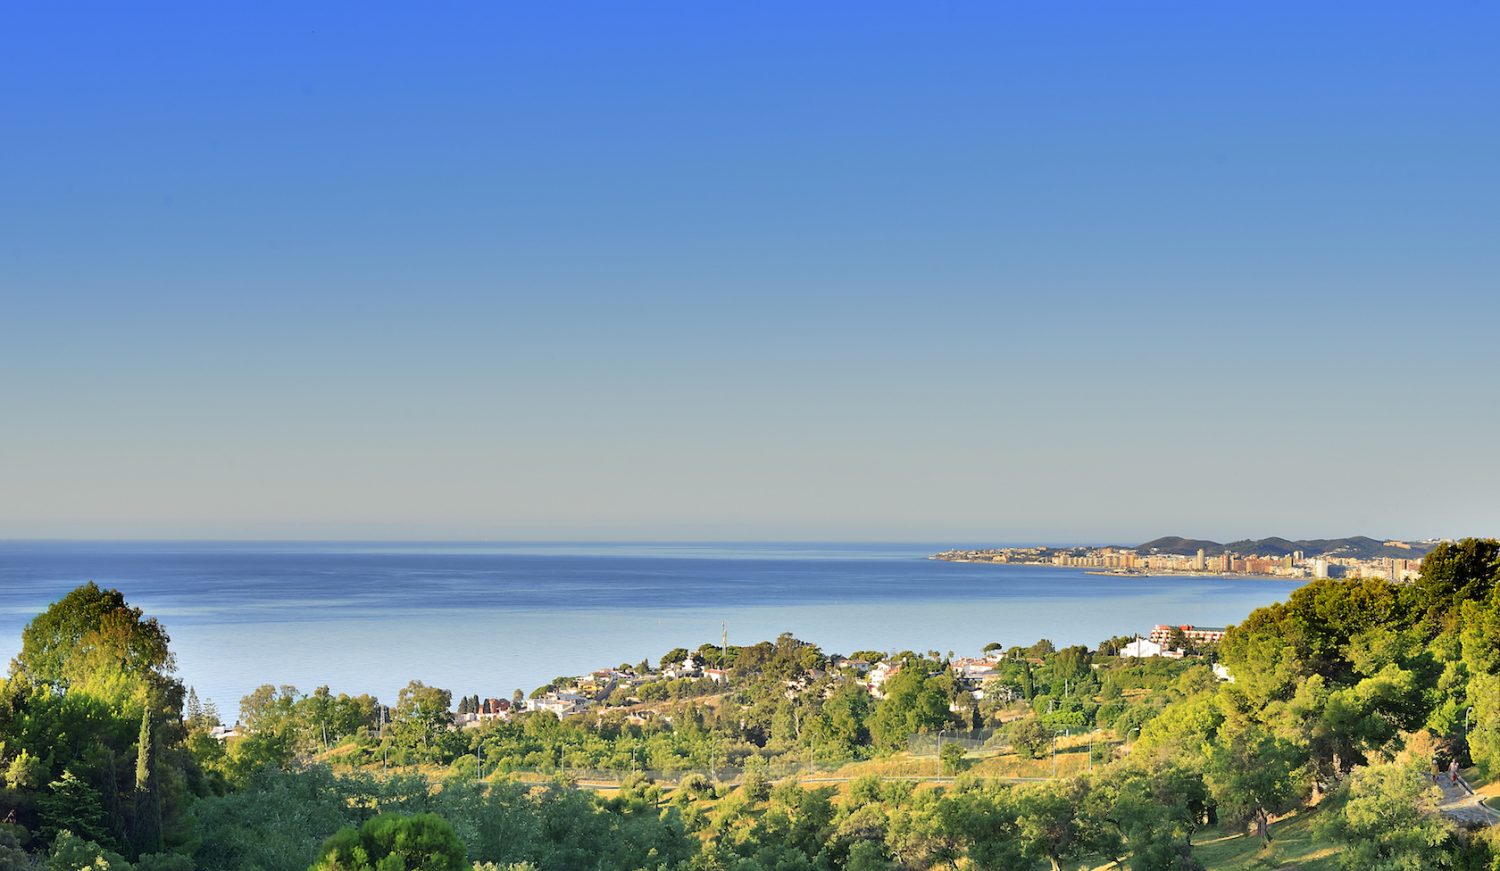 Všechny vily mají nádherný panoramatický výhled na Středozemní moře.